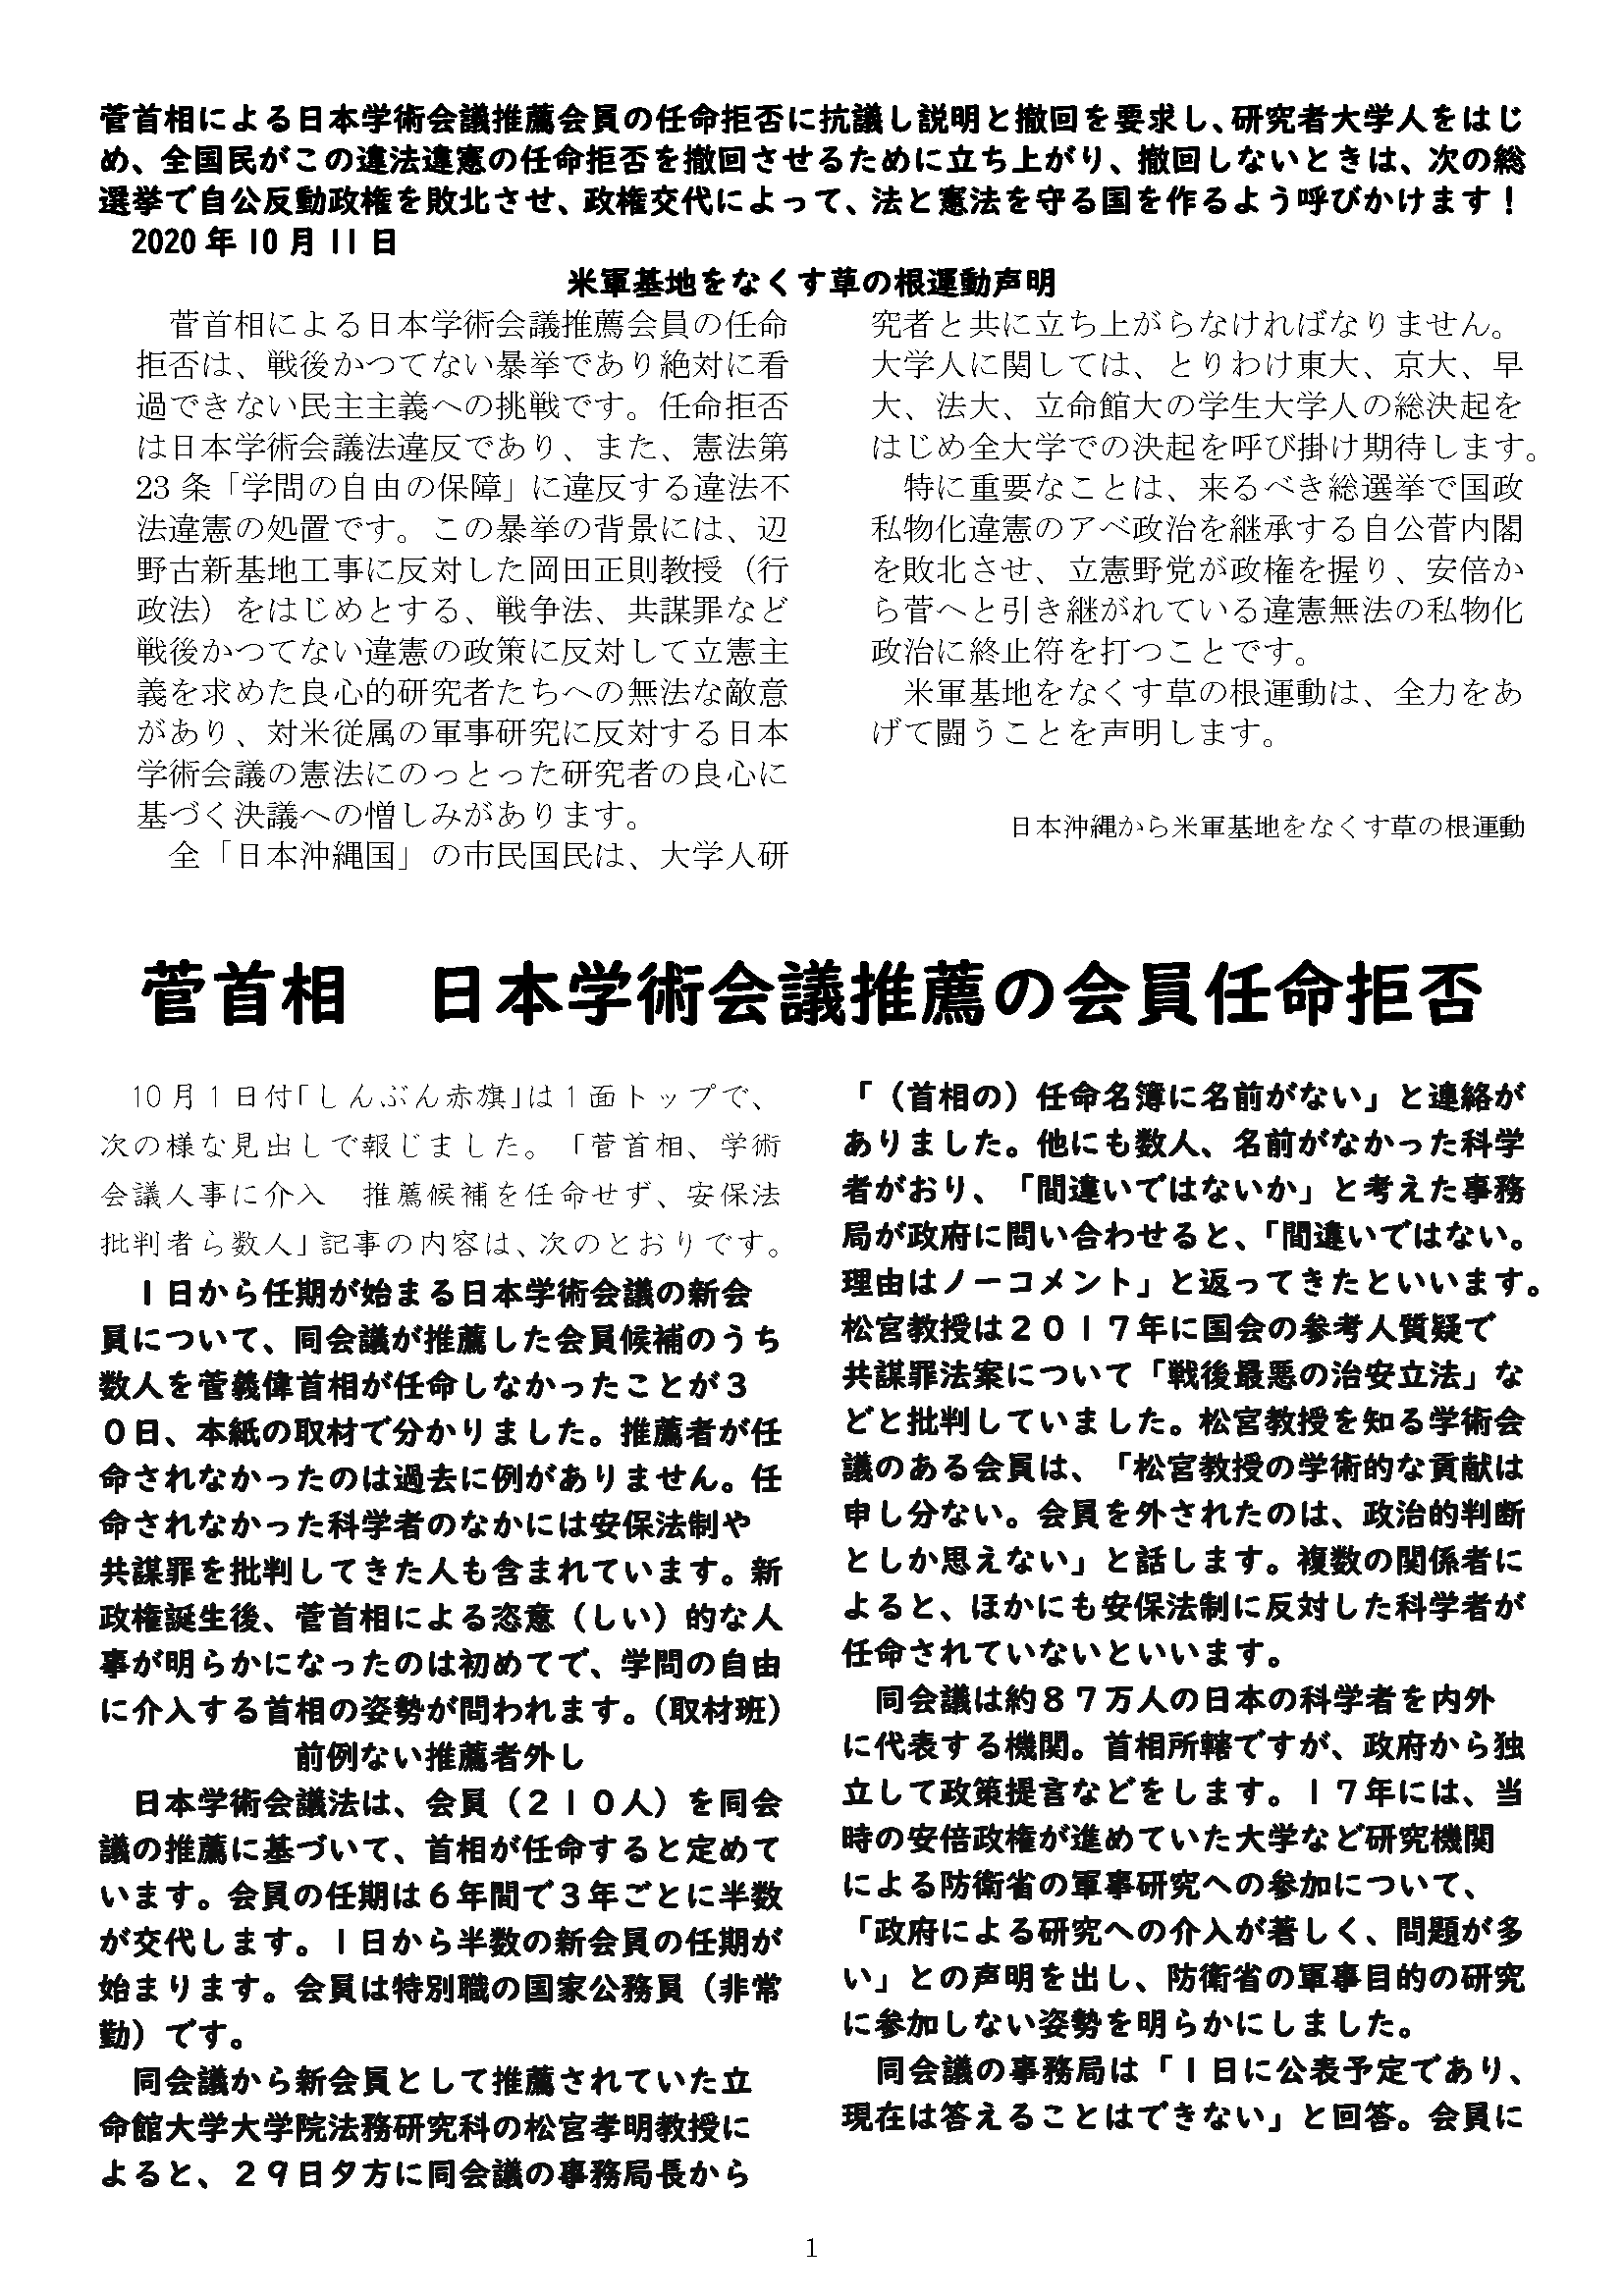 菅首相による日本学術会議推薦会員の任命拒否に抗議し説明と撤回を要求する声明